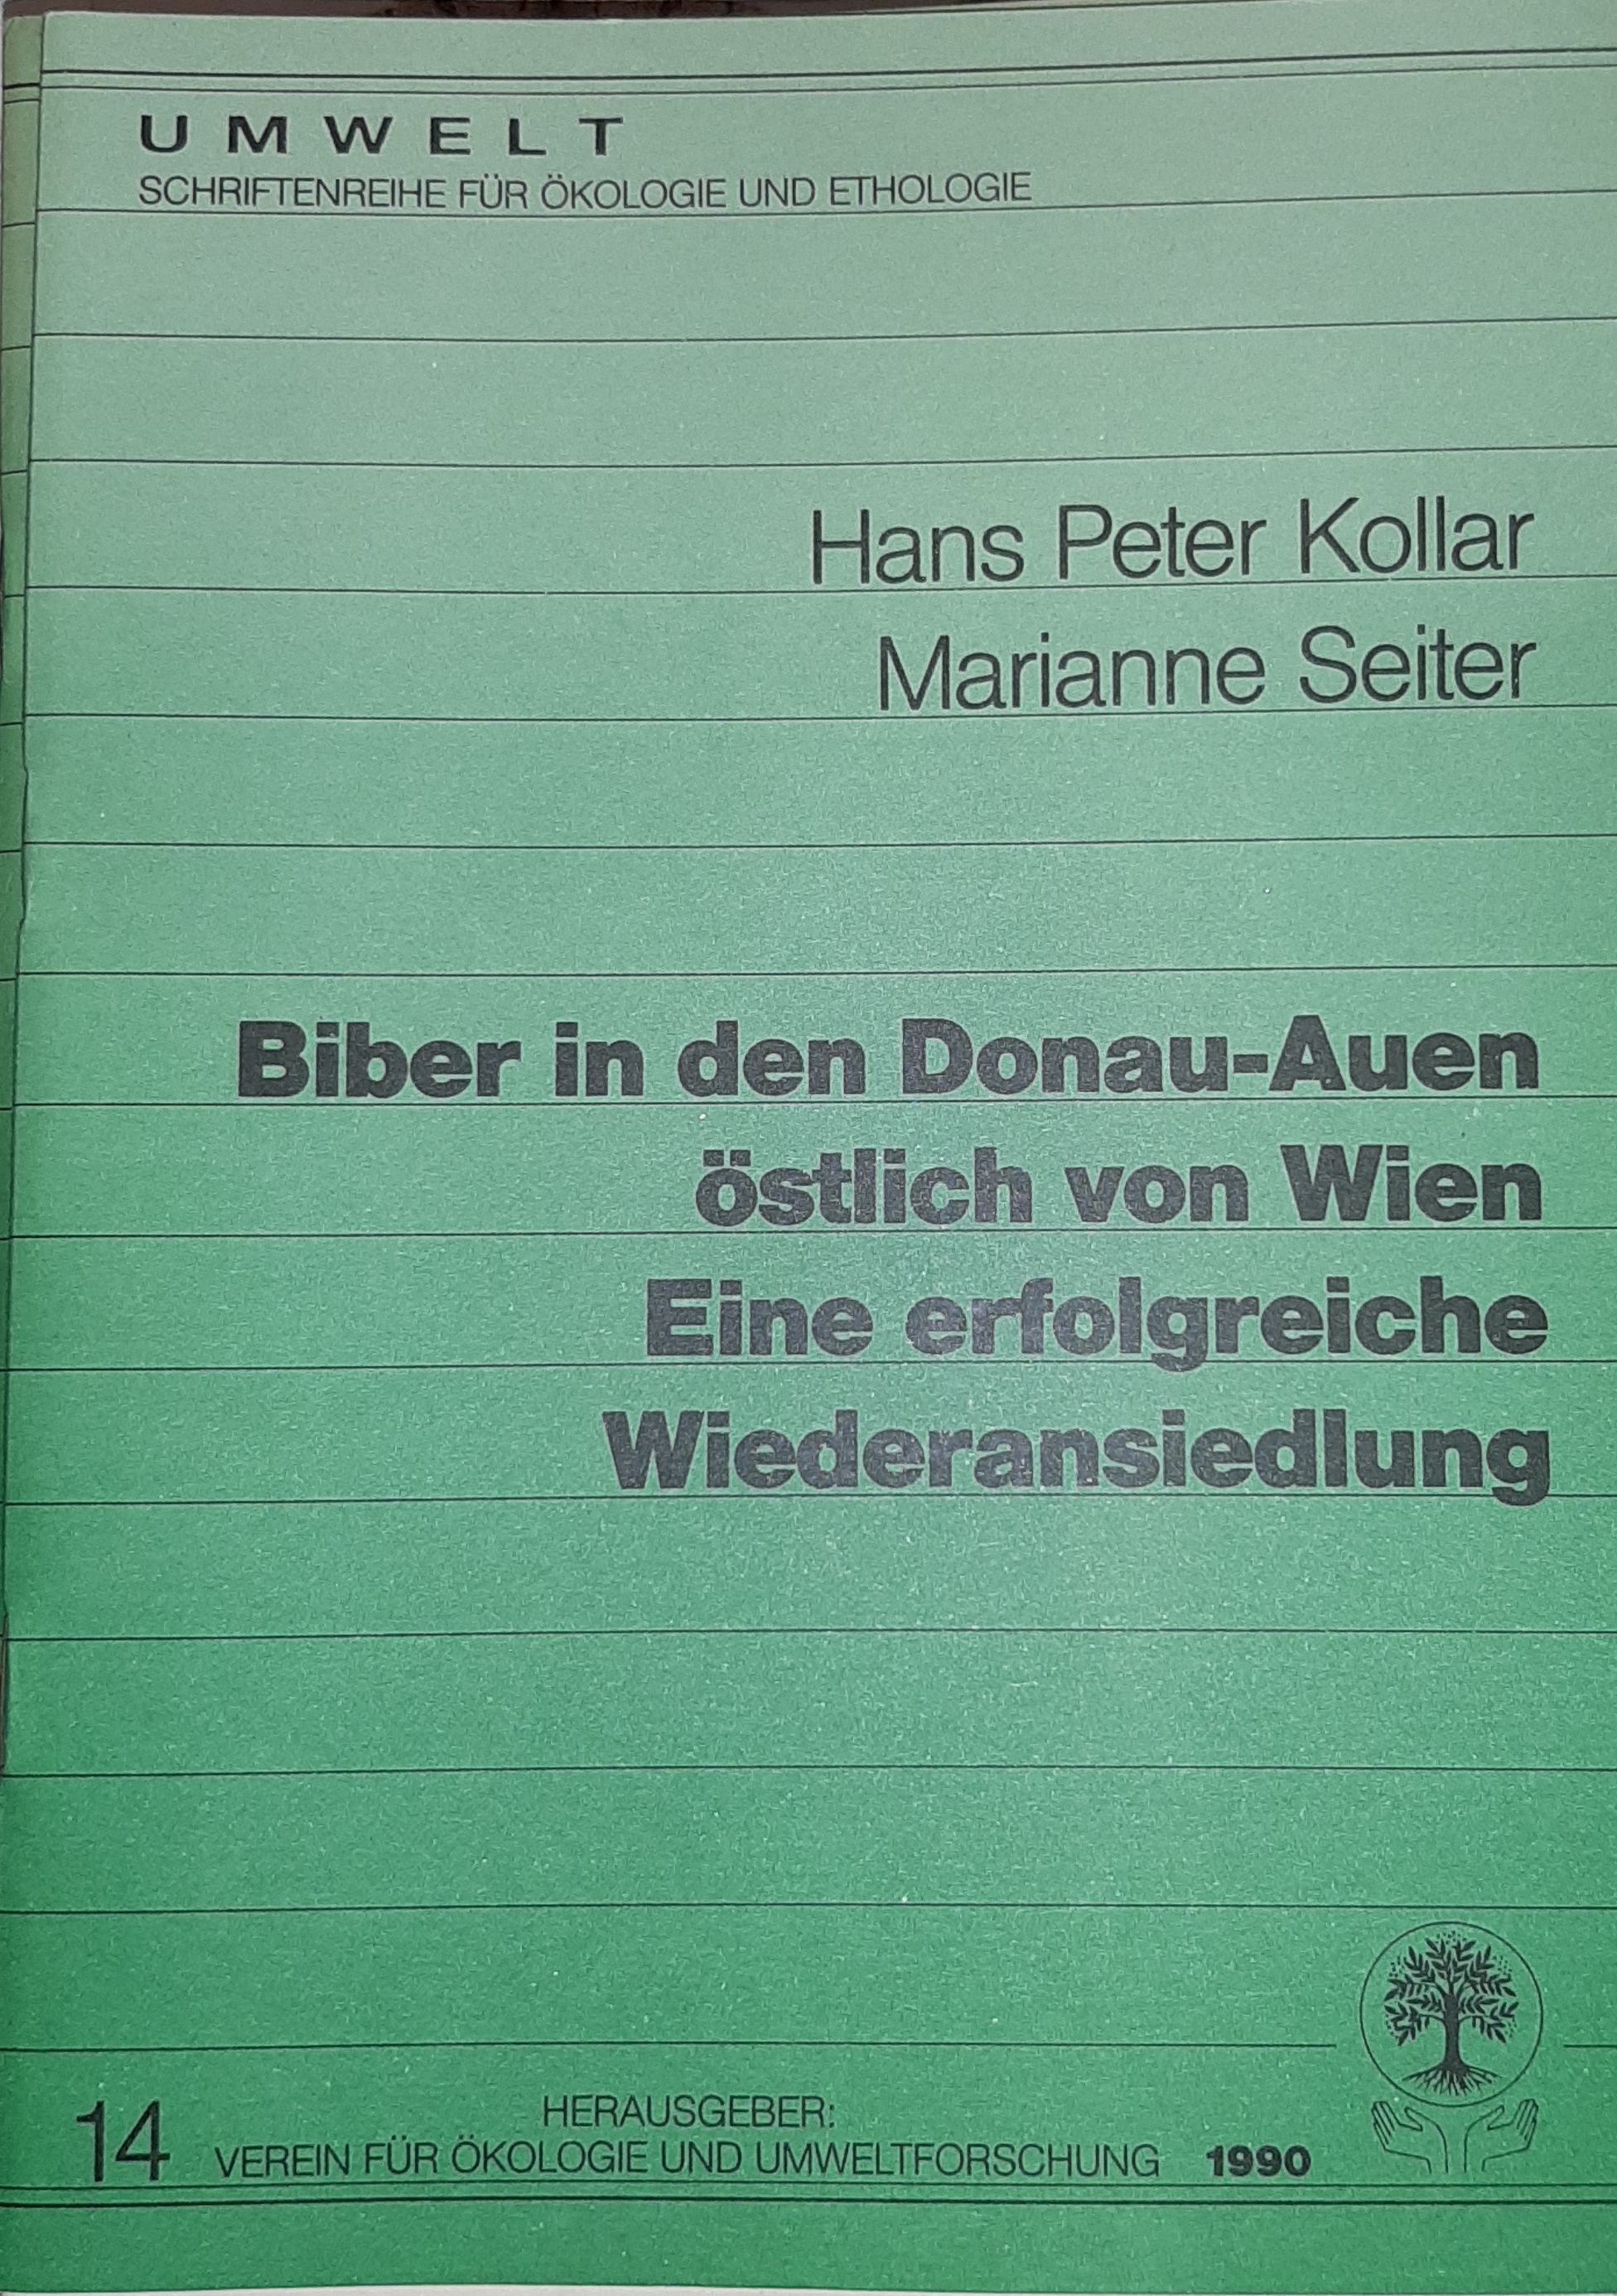 Hans Peter Kollar, Marianne Seiter:  Biber in den Donau-Auen östlich von Wien. Eine erfolgreiche Wiederansiedlung. (Rippl-Rónai Múzeum RR-F)